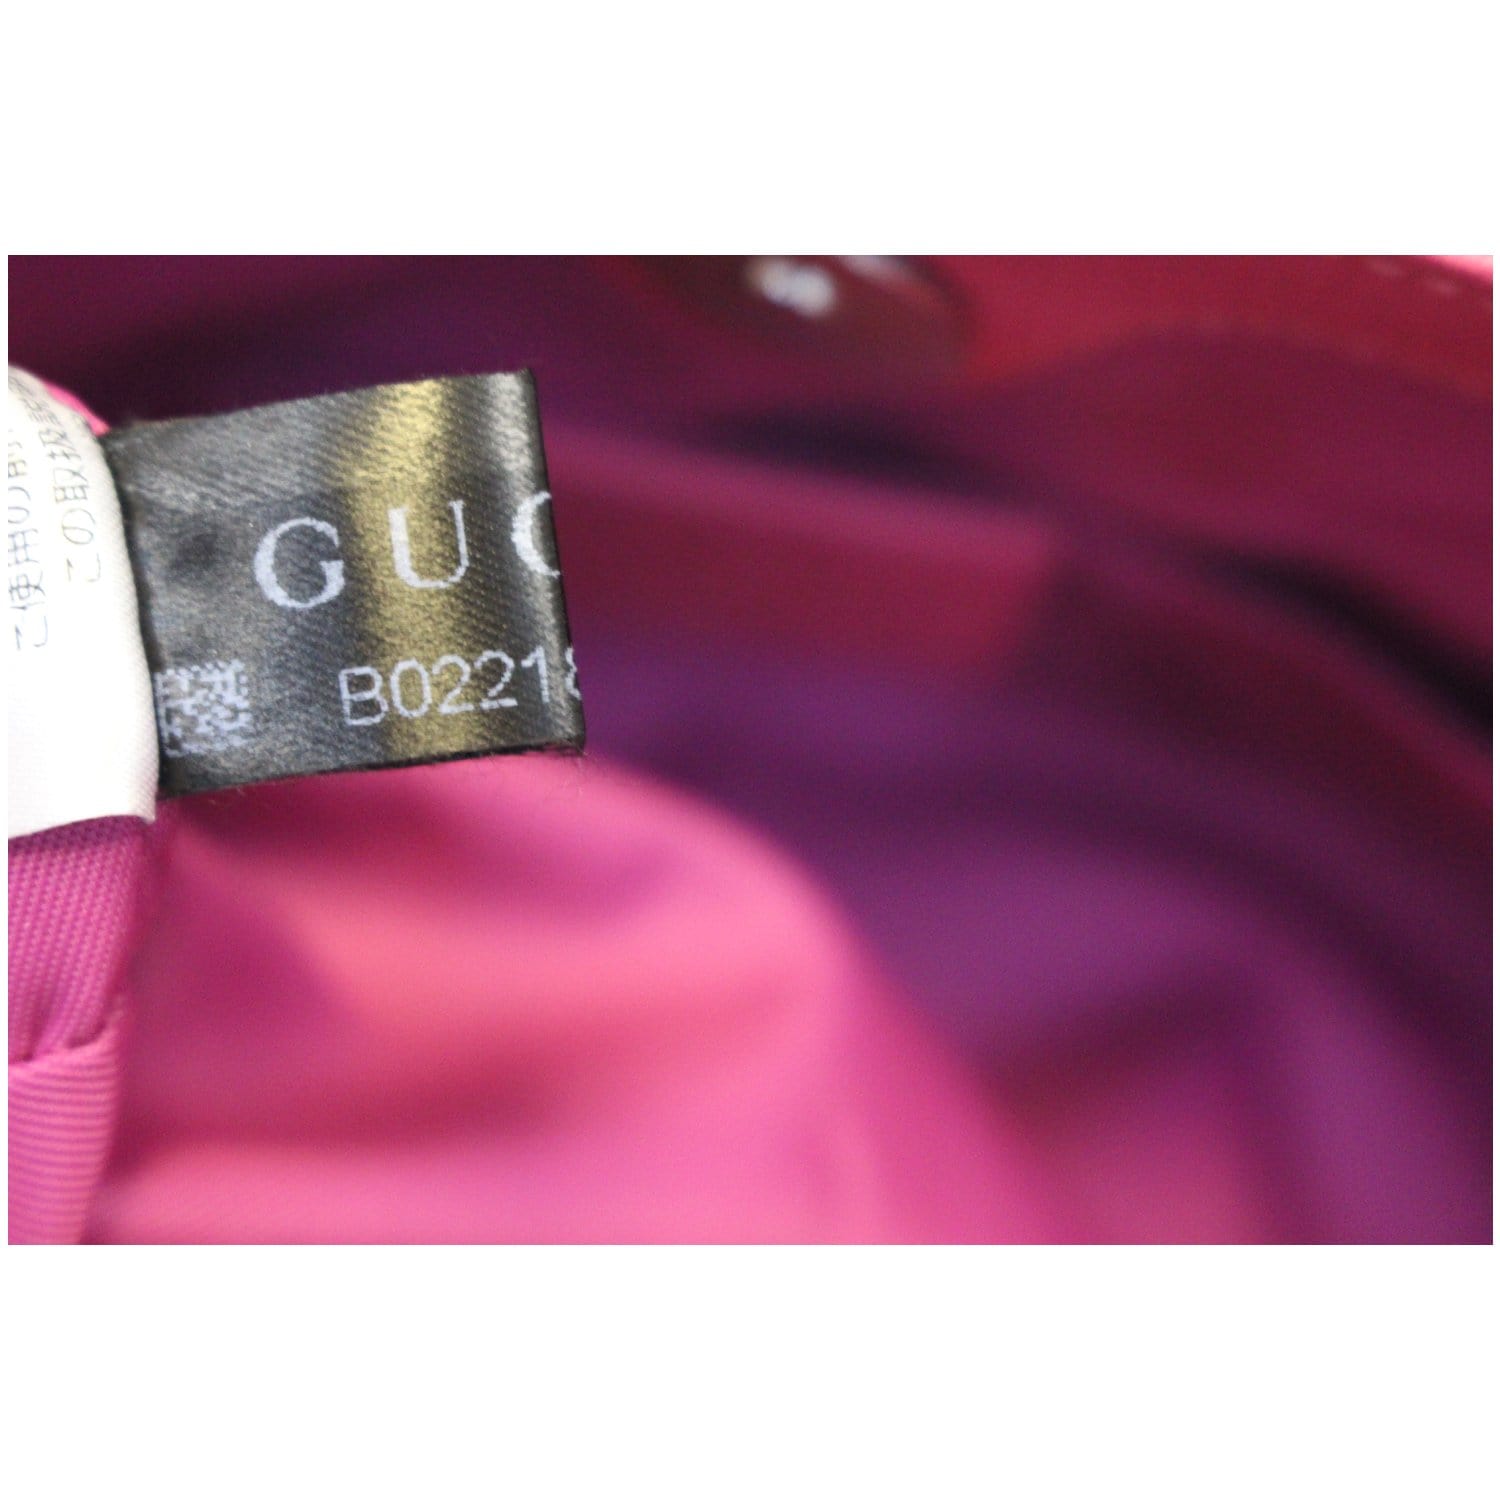 GUCCI GG Supreme Canvas Tote Bag Beige 410812-US